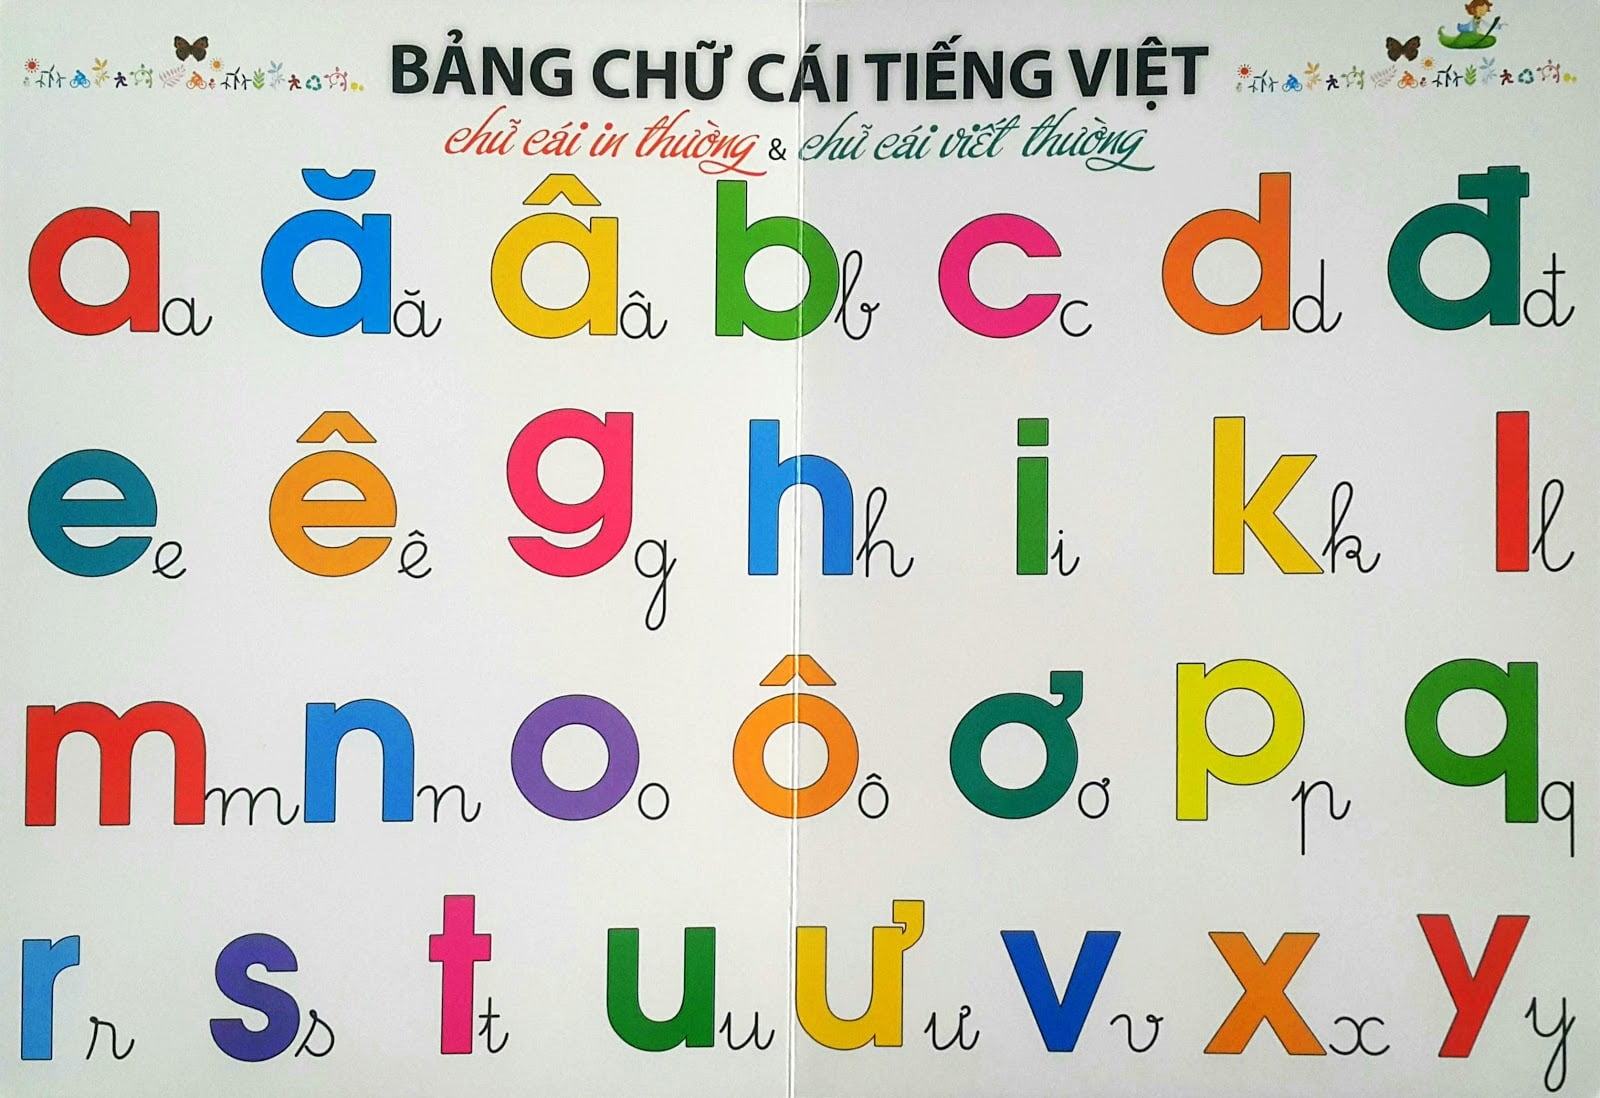 Bang Chủ nói tiếng Việt năm 2020